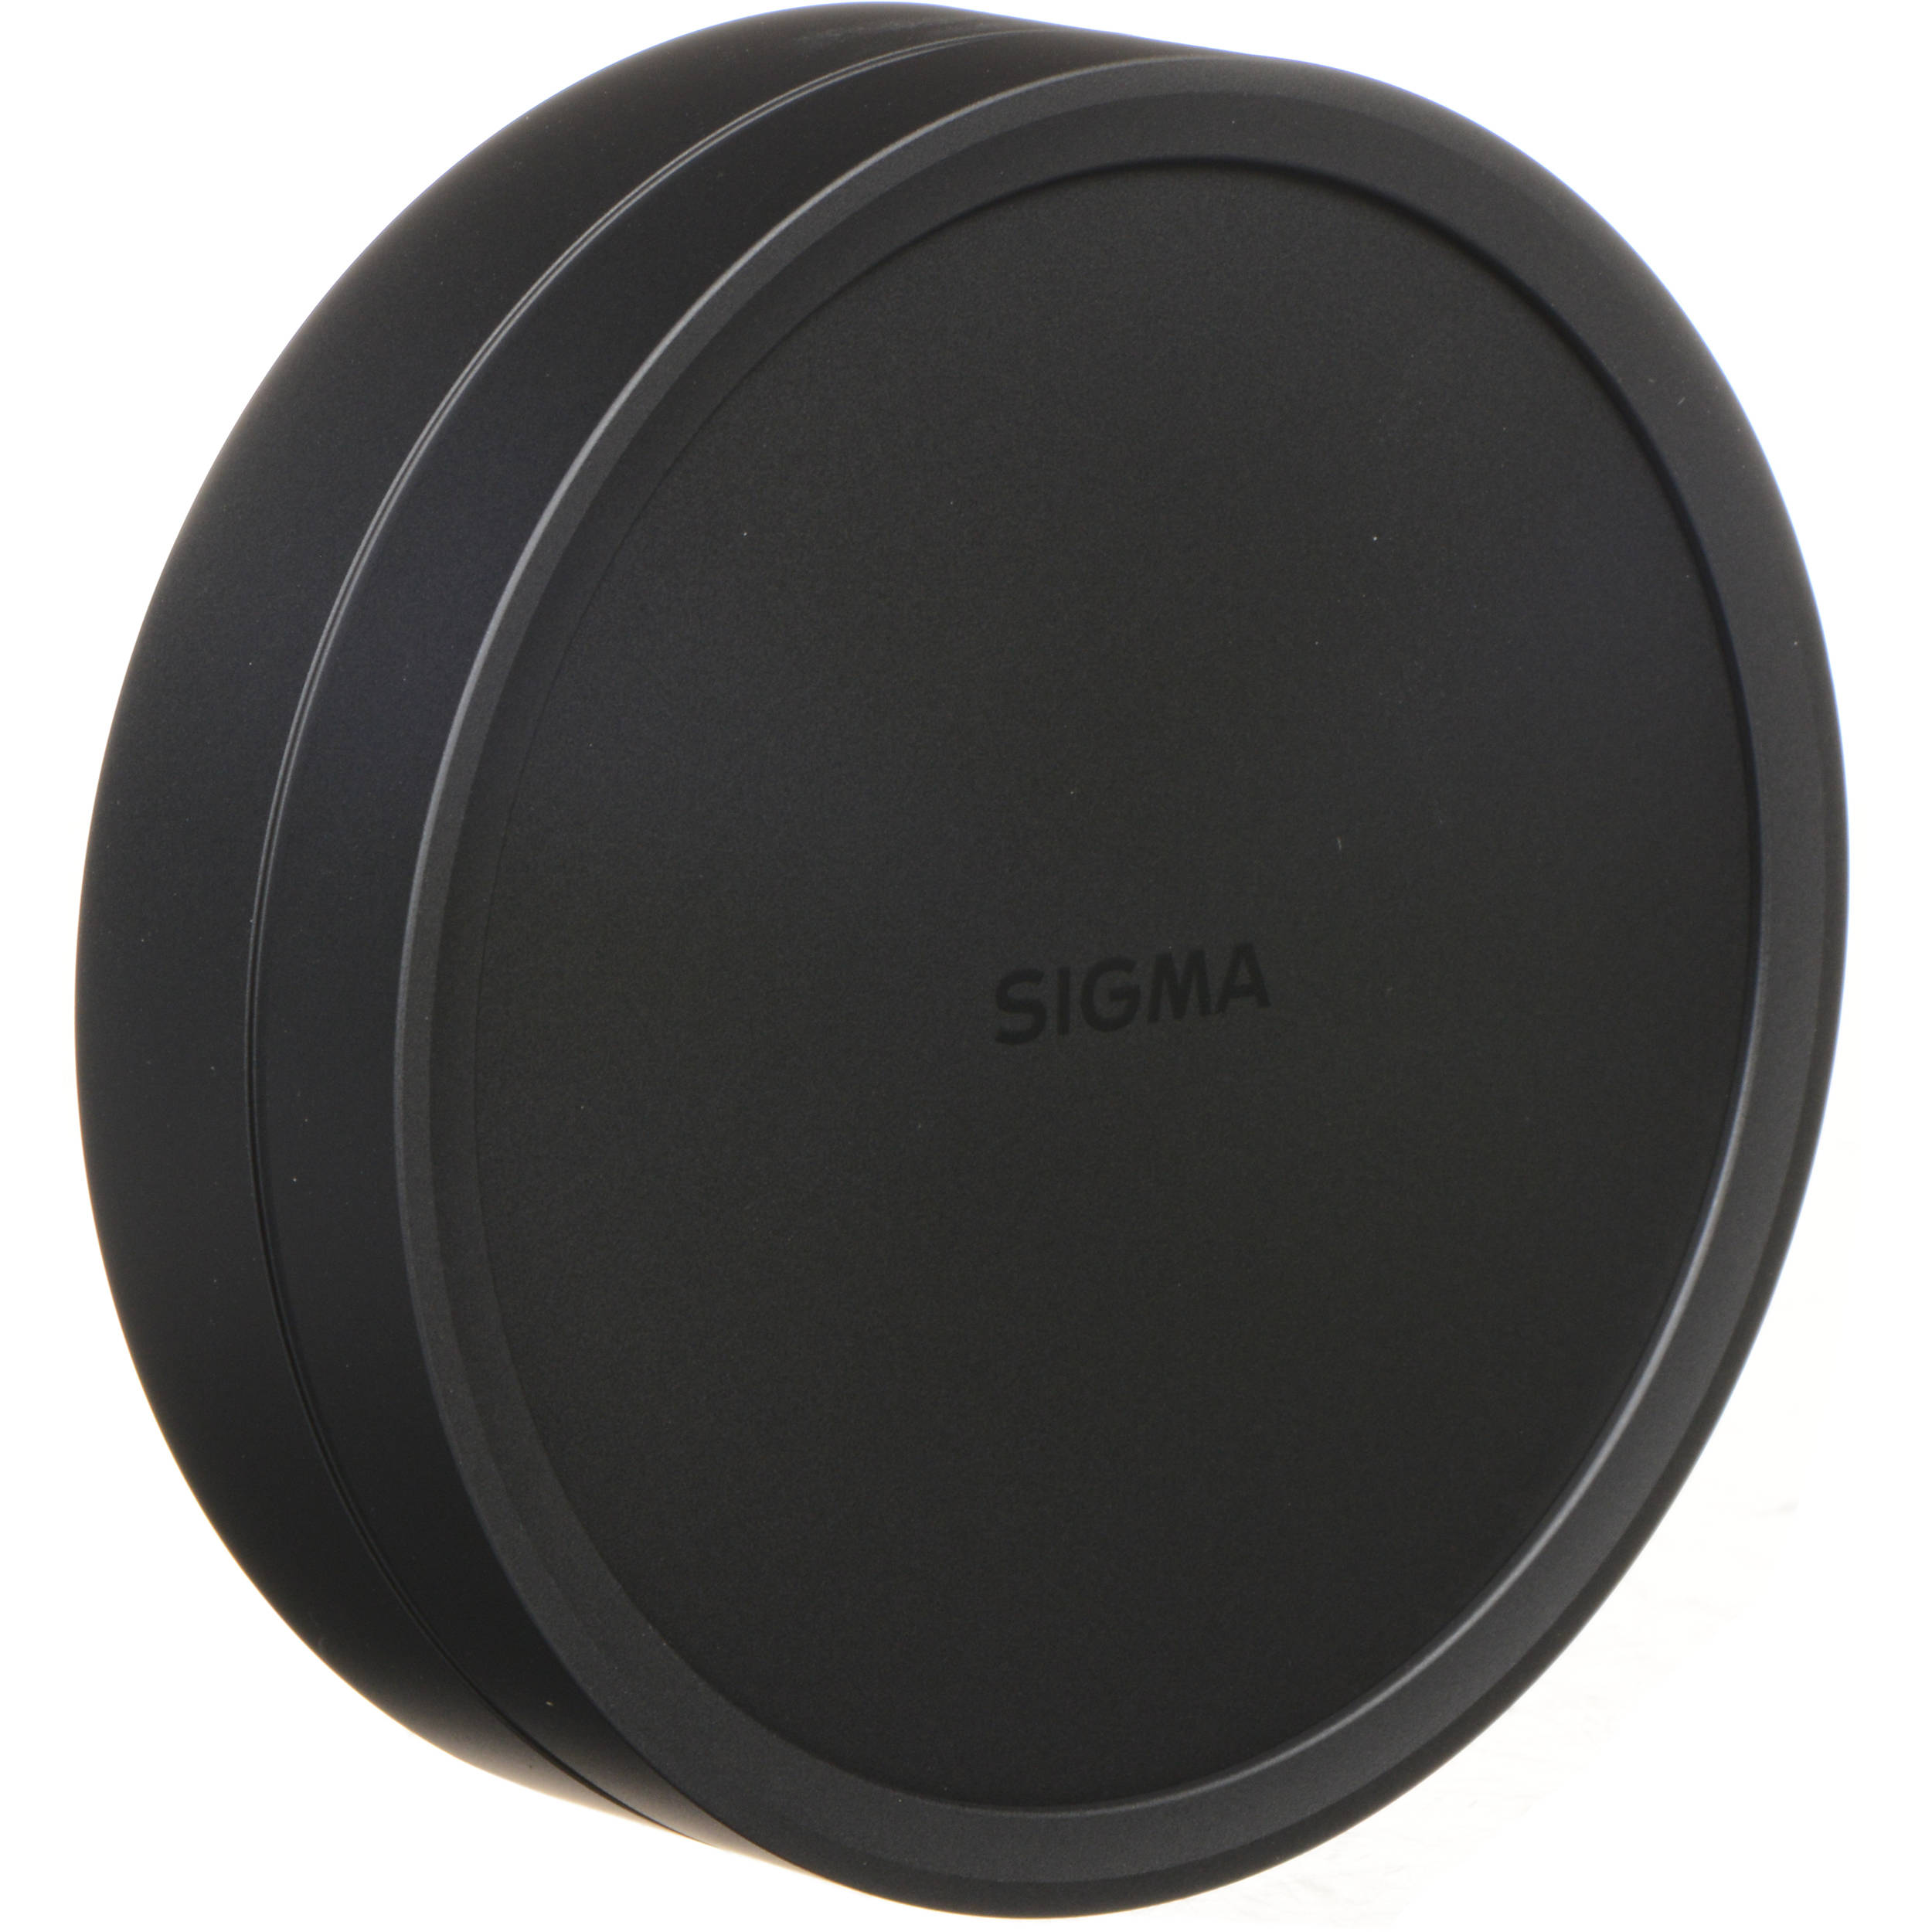 Sigma Lc735 02 Lens Cap Cover For 8mm F 3 5 Ex Dg Lc735 02 B H